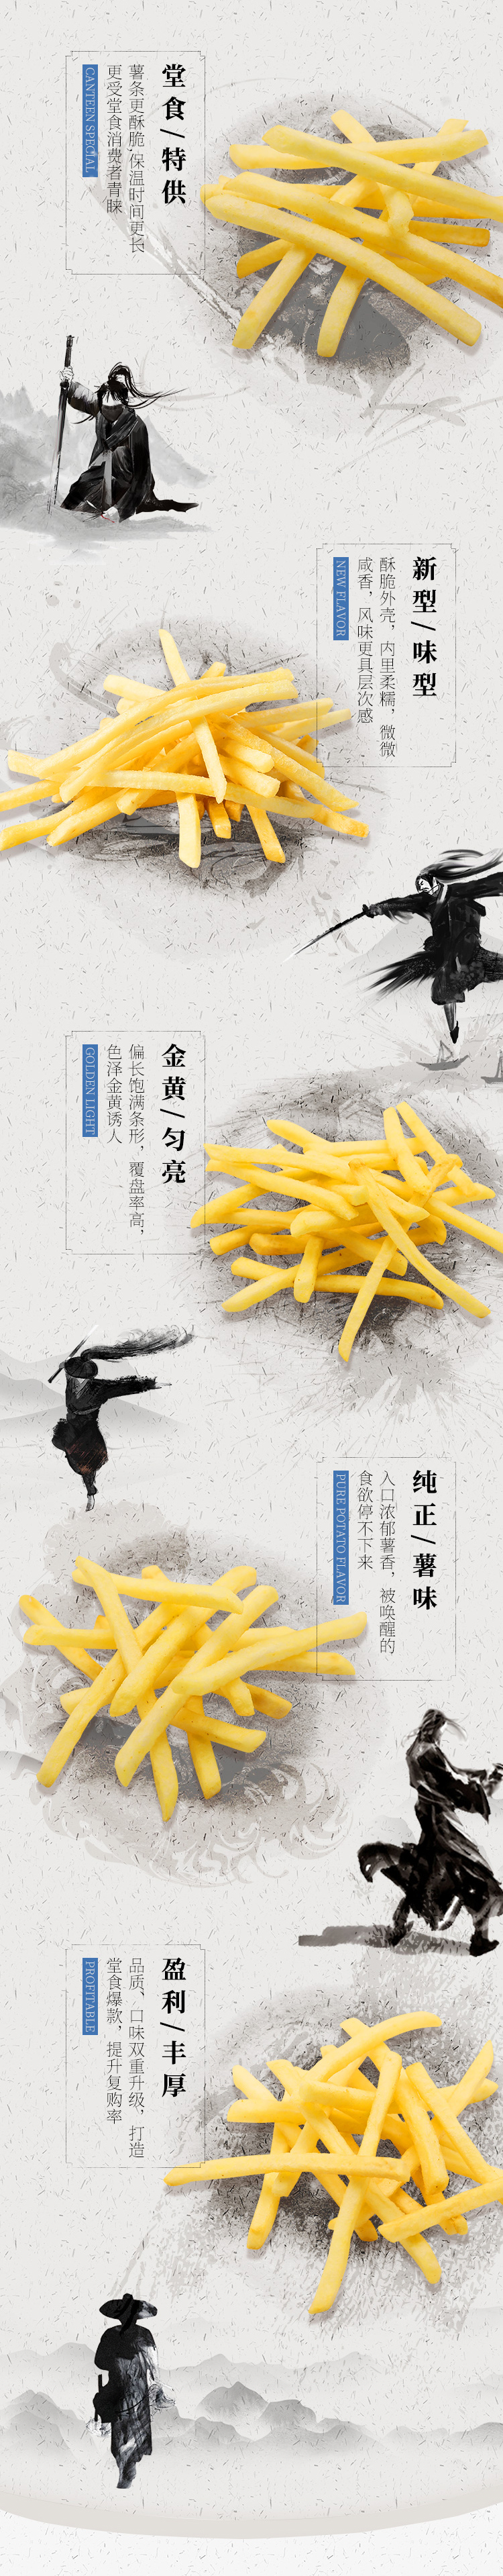 雪川-雪峪湛卢 1/4冷冻薯条2kg